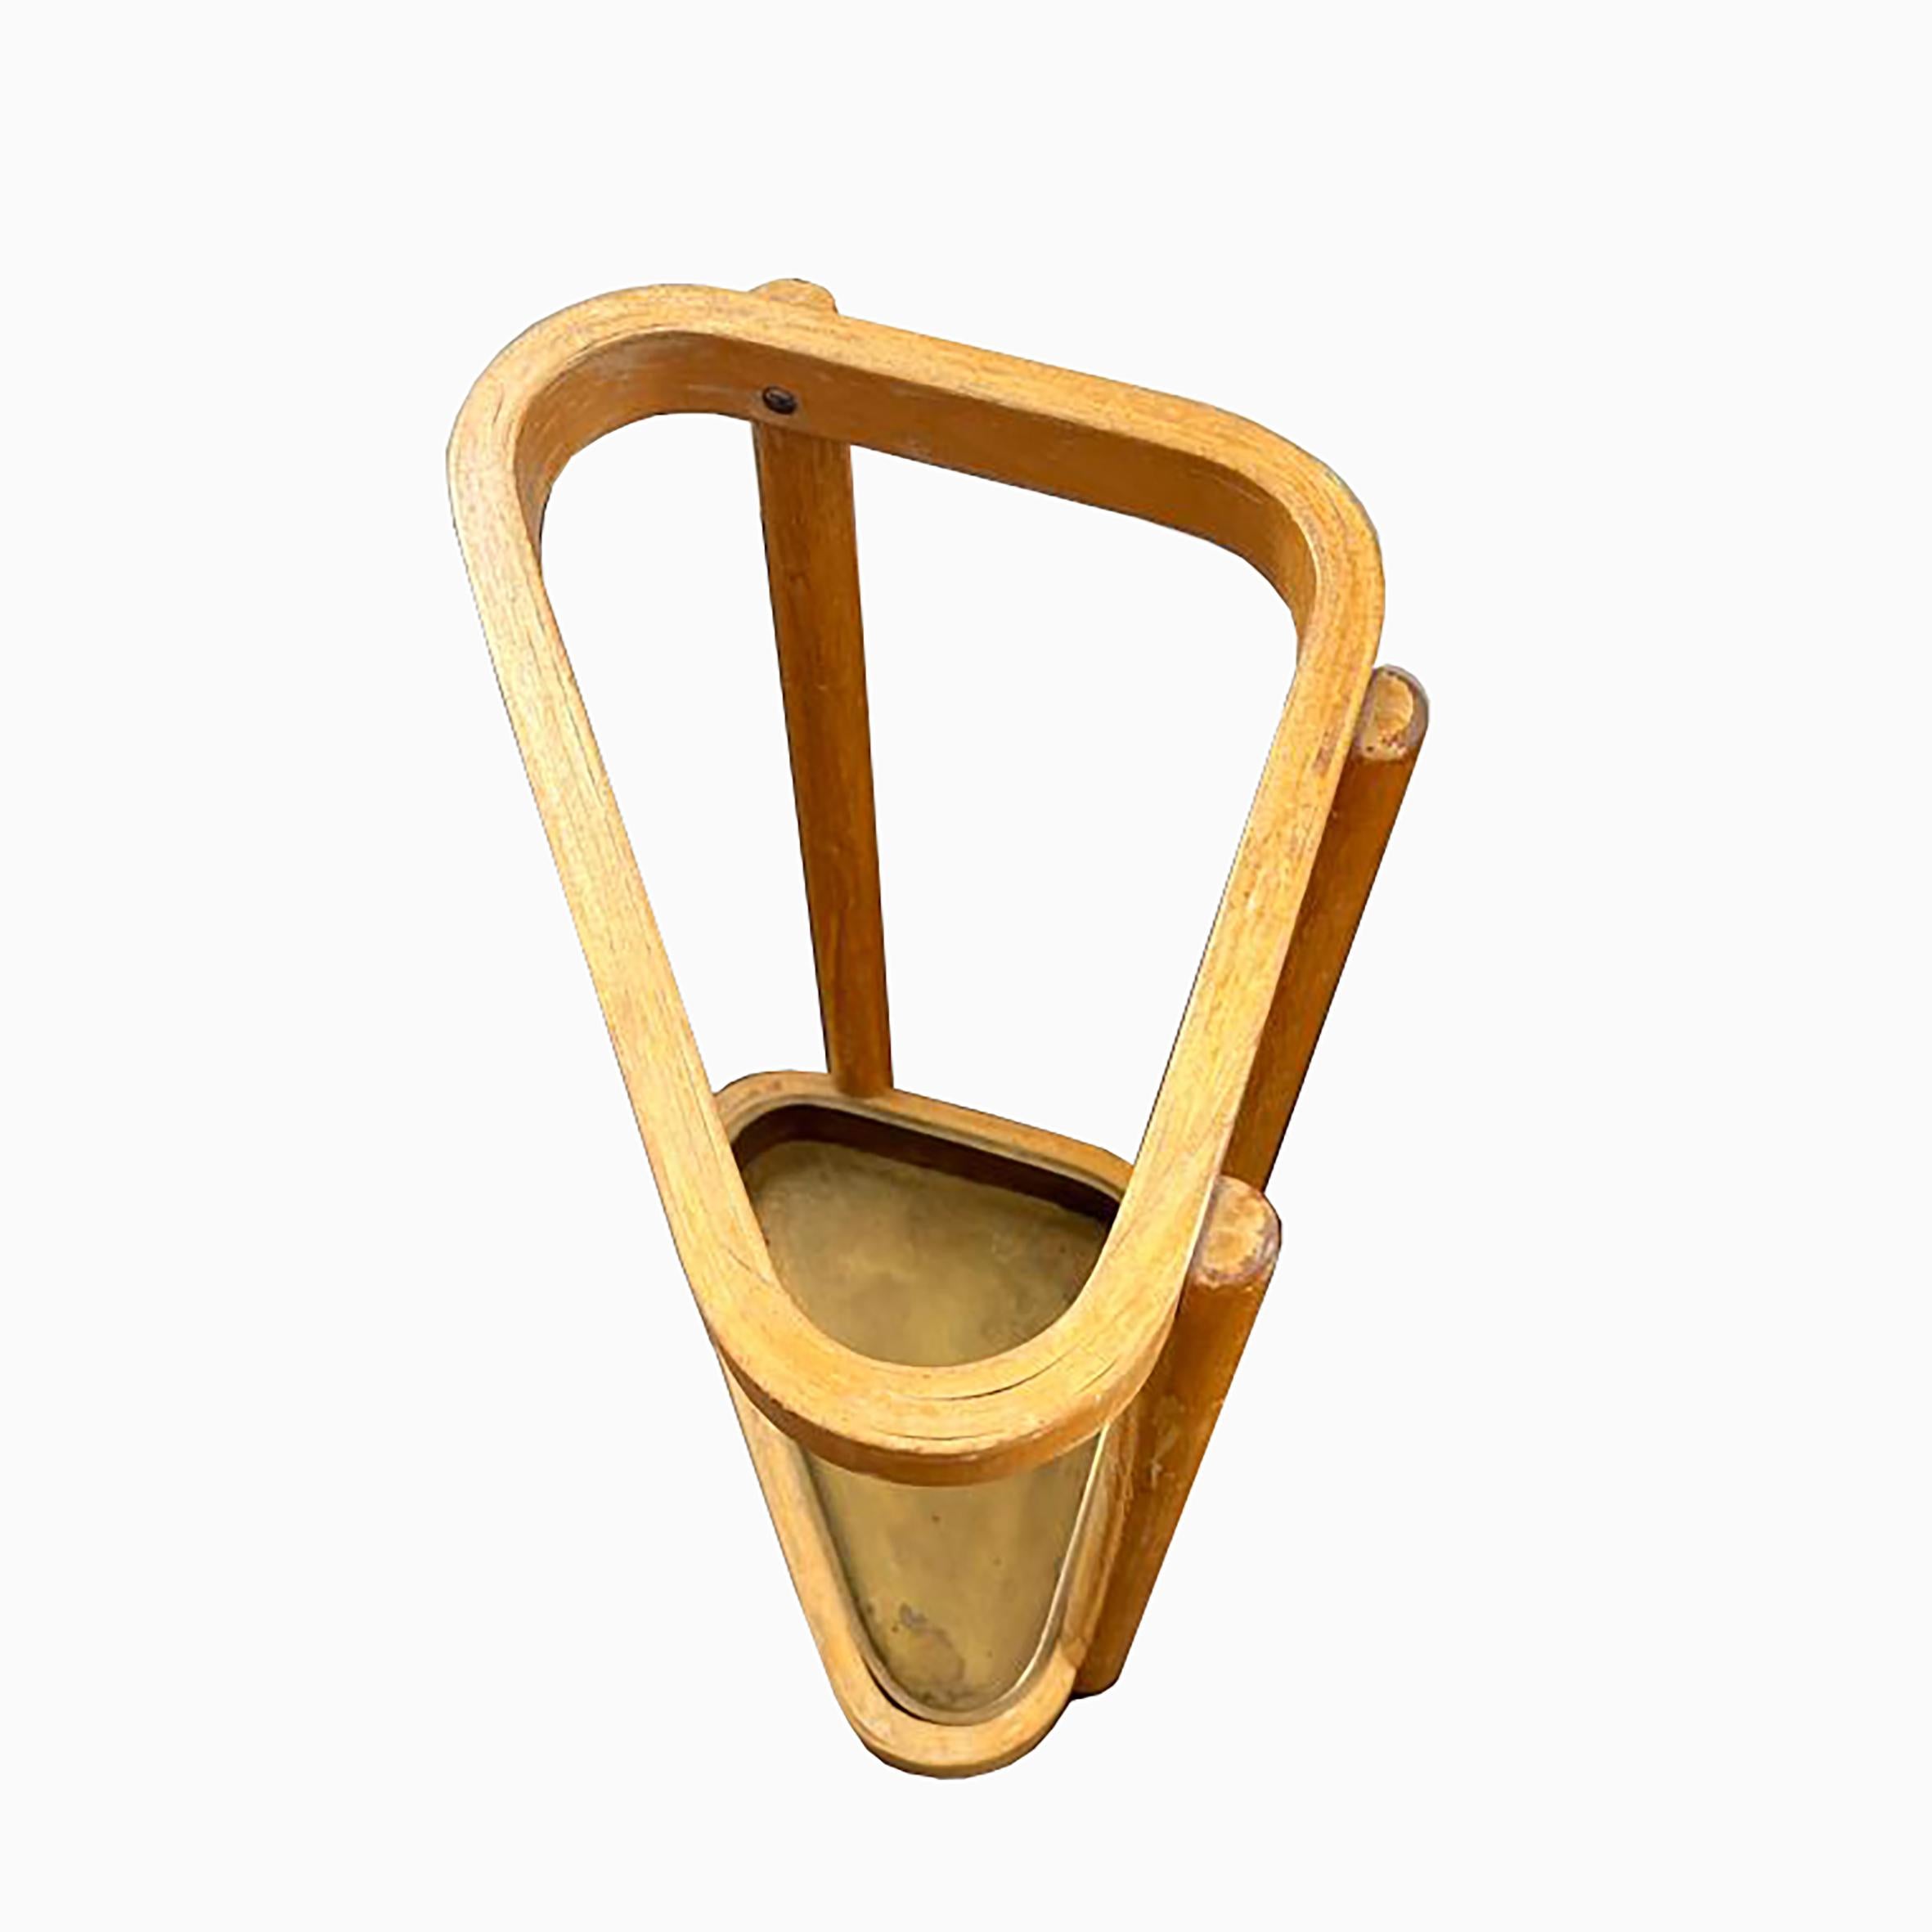 Alvar Aalto (1898-1976)

Schirmständer

Schirmständer aus Birke und Messing mit dreiseitigem Sockel, der aus drei Säulen besteht, die durch einen konischen Rand verbunden sind.
Produziert von Artek, Finnland.
Nach 1936.

Abmessungen
Höhe :